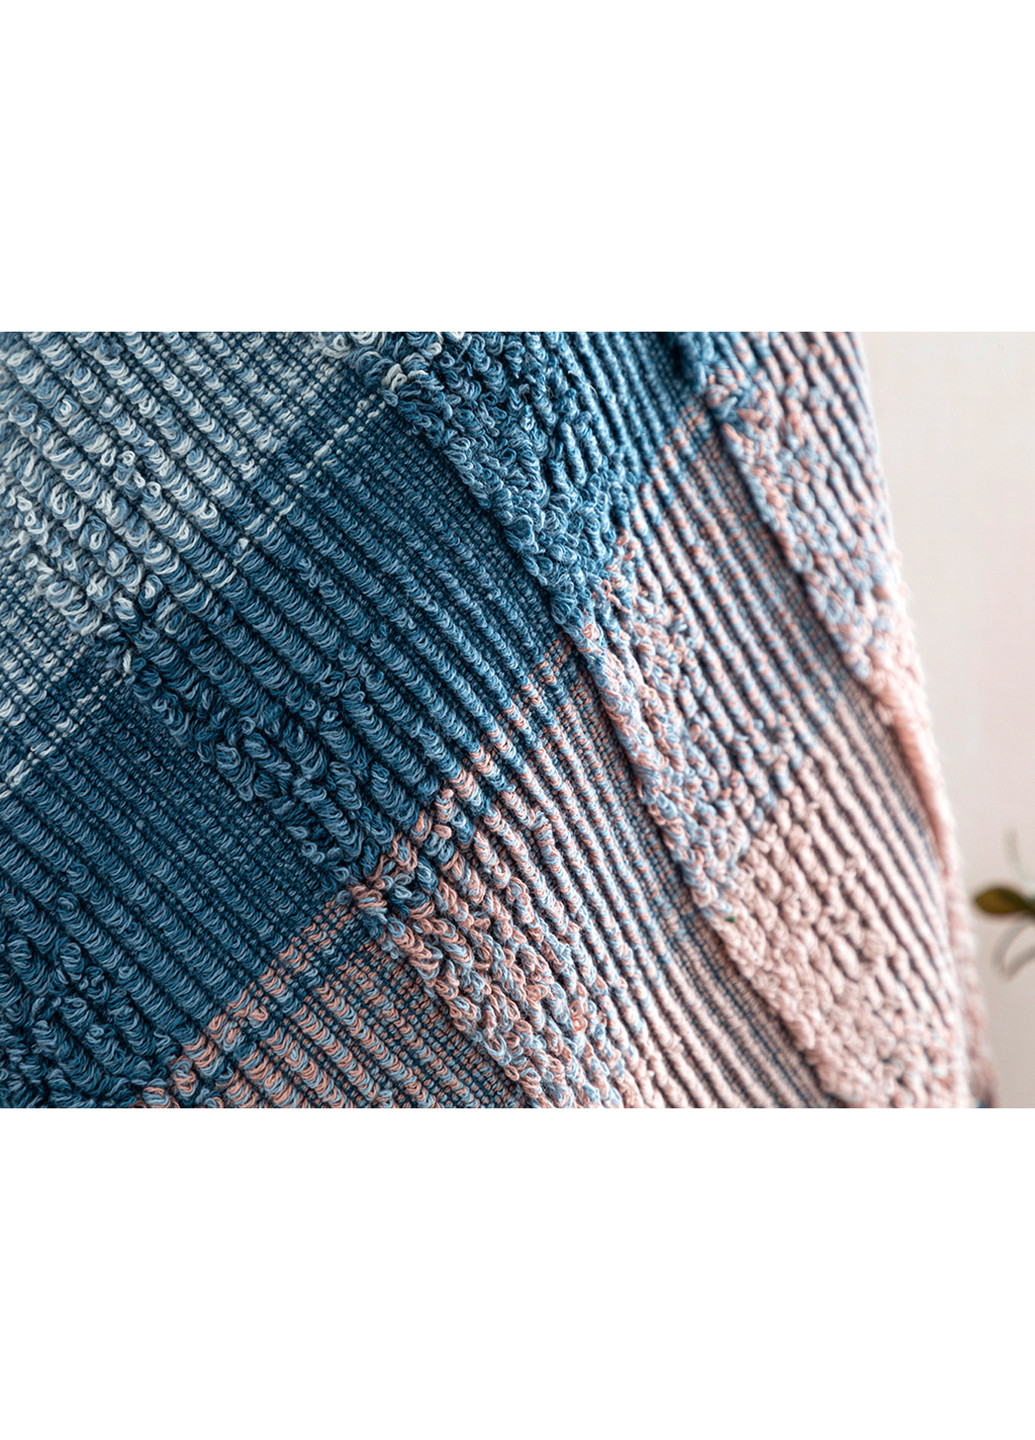 English Home полотенце для лица, 50х70 см полоска синий производство - Турция